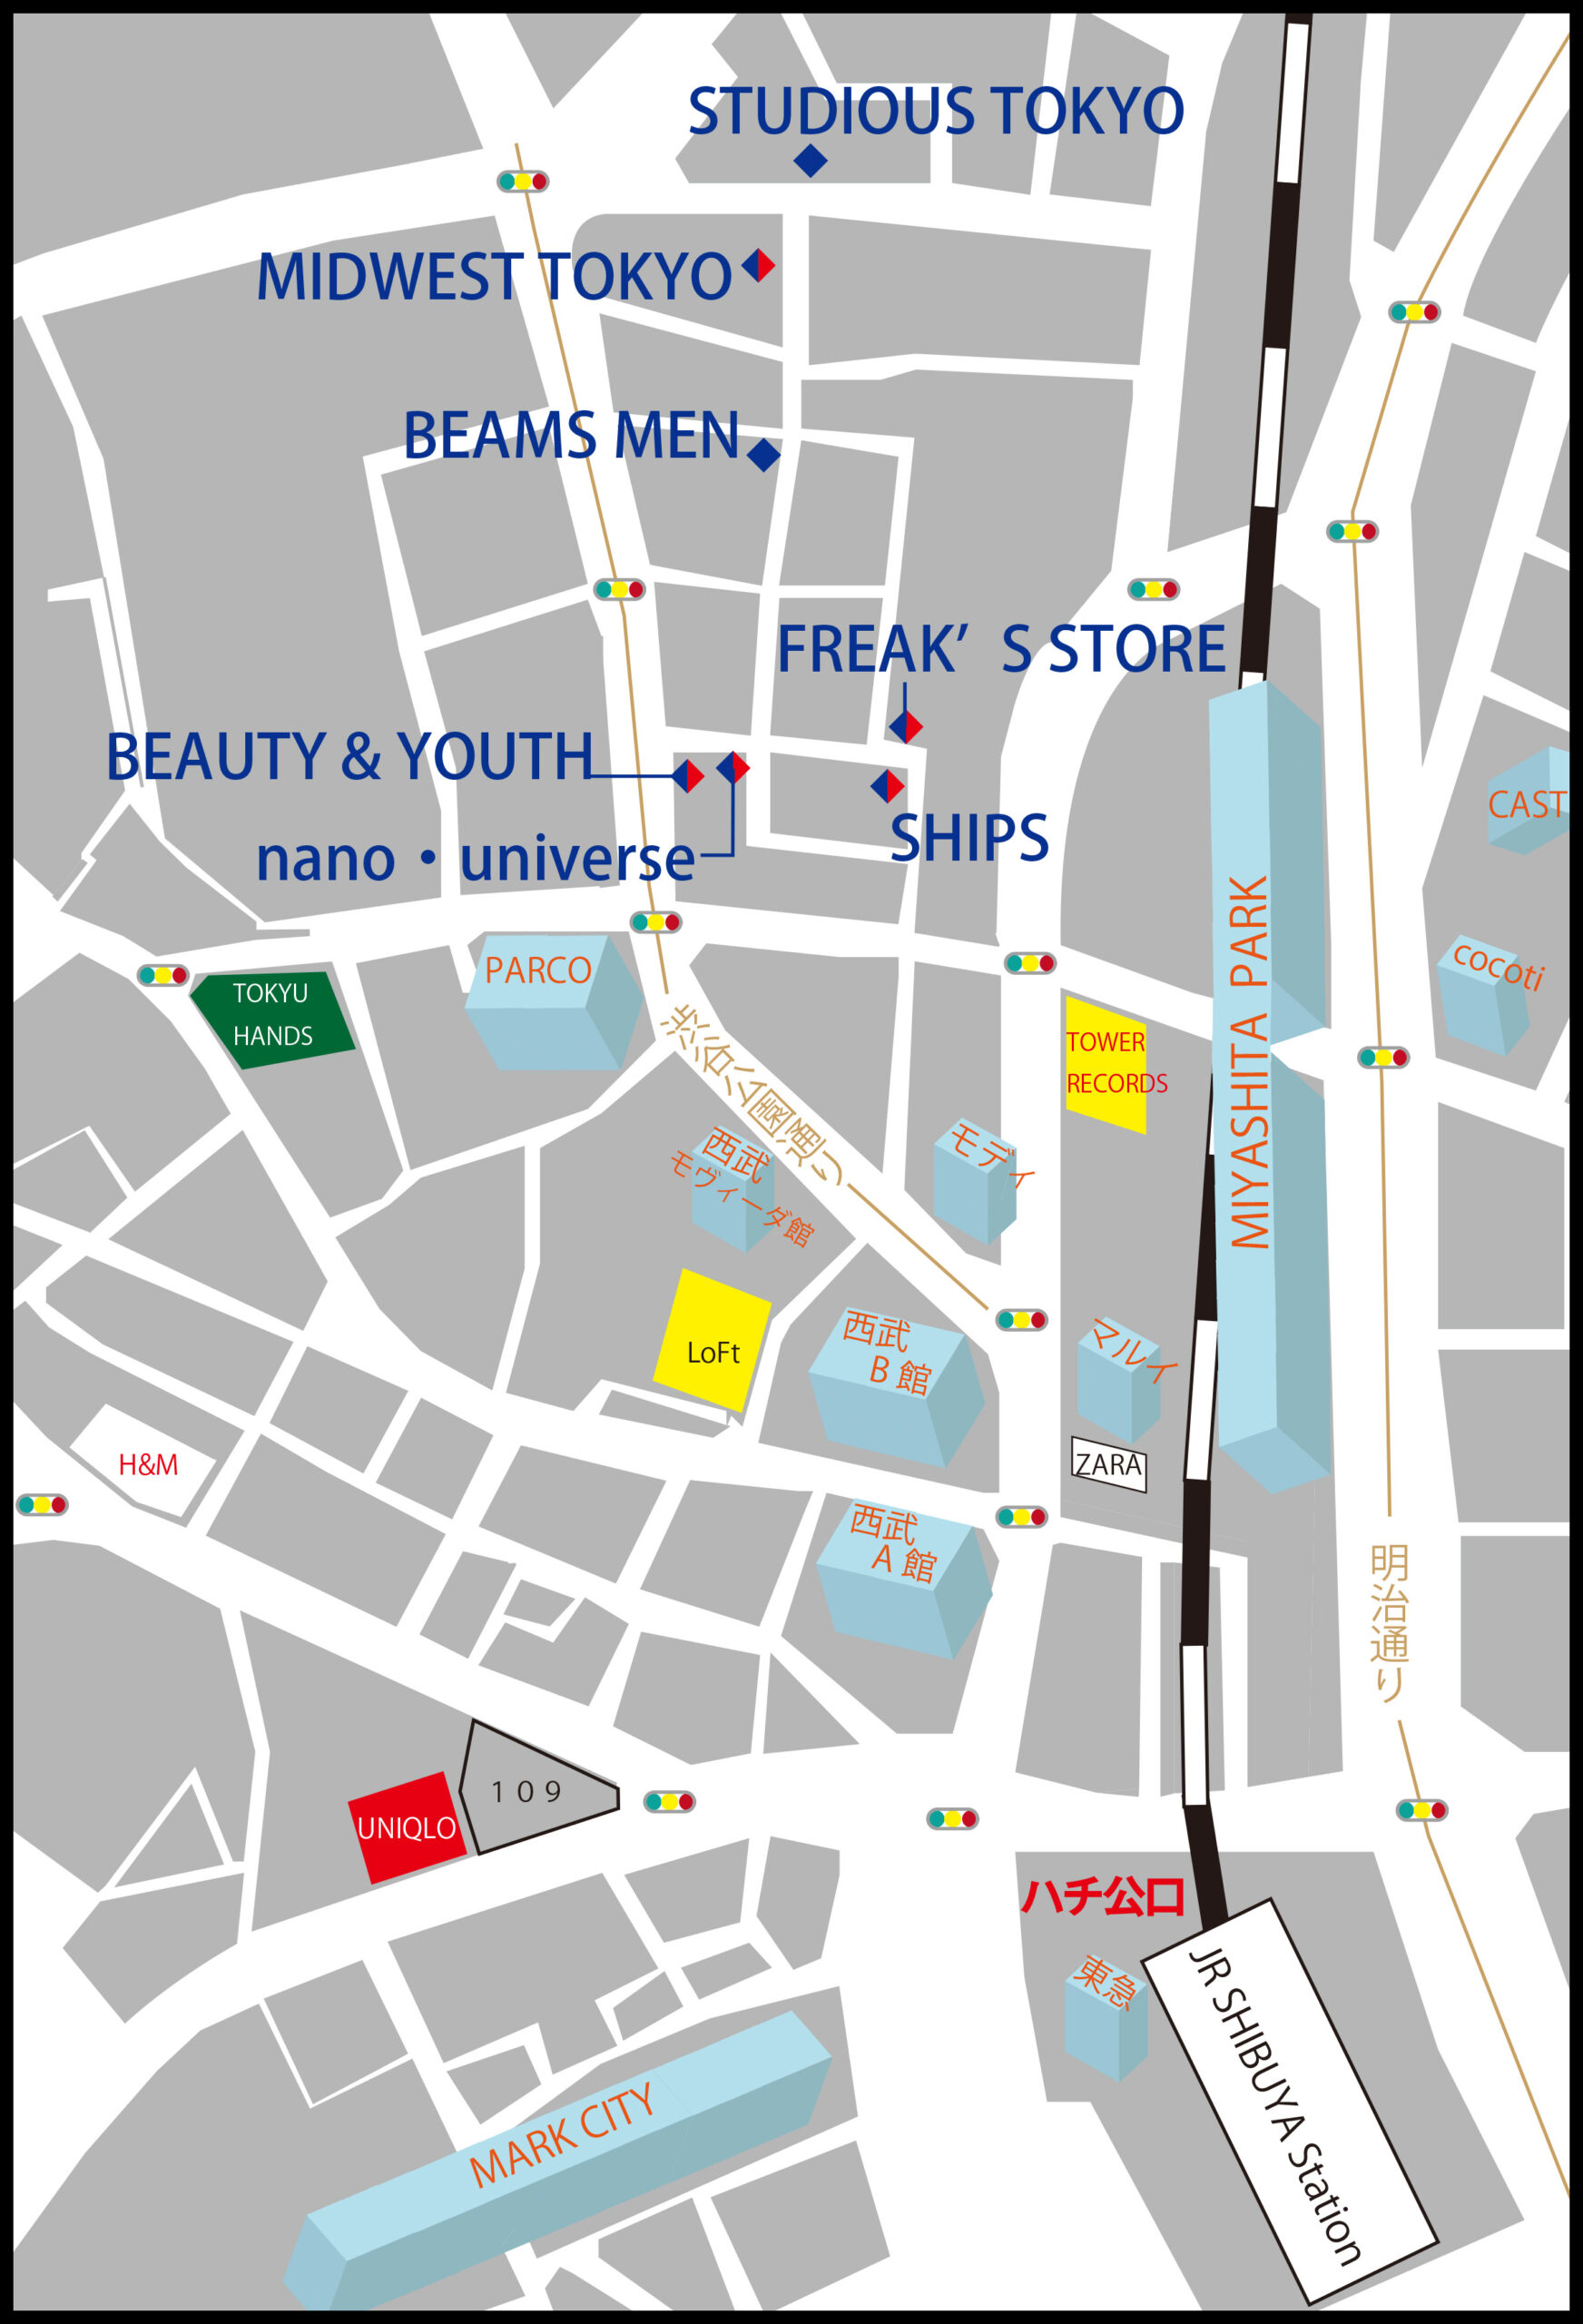 渋谷 神南エリアの知名度抜群なセレクトショップ Map付き Fashion Map Tokyo